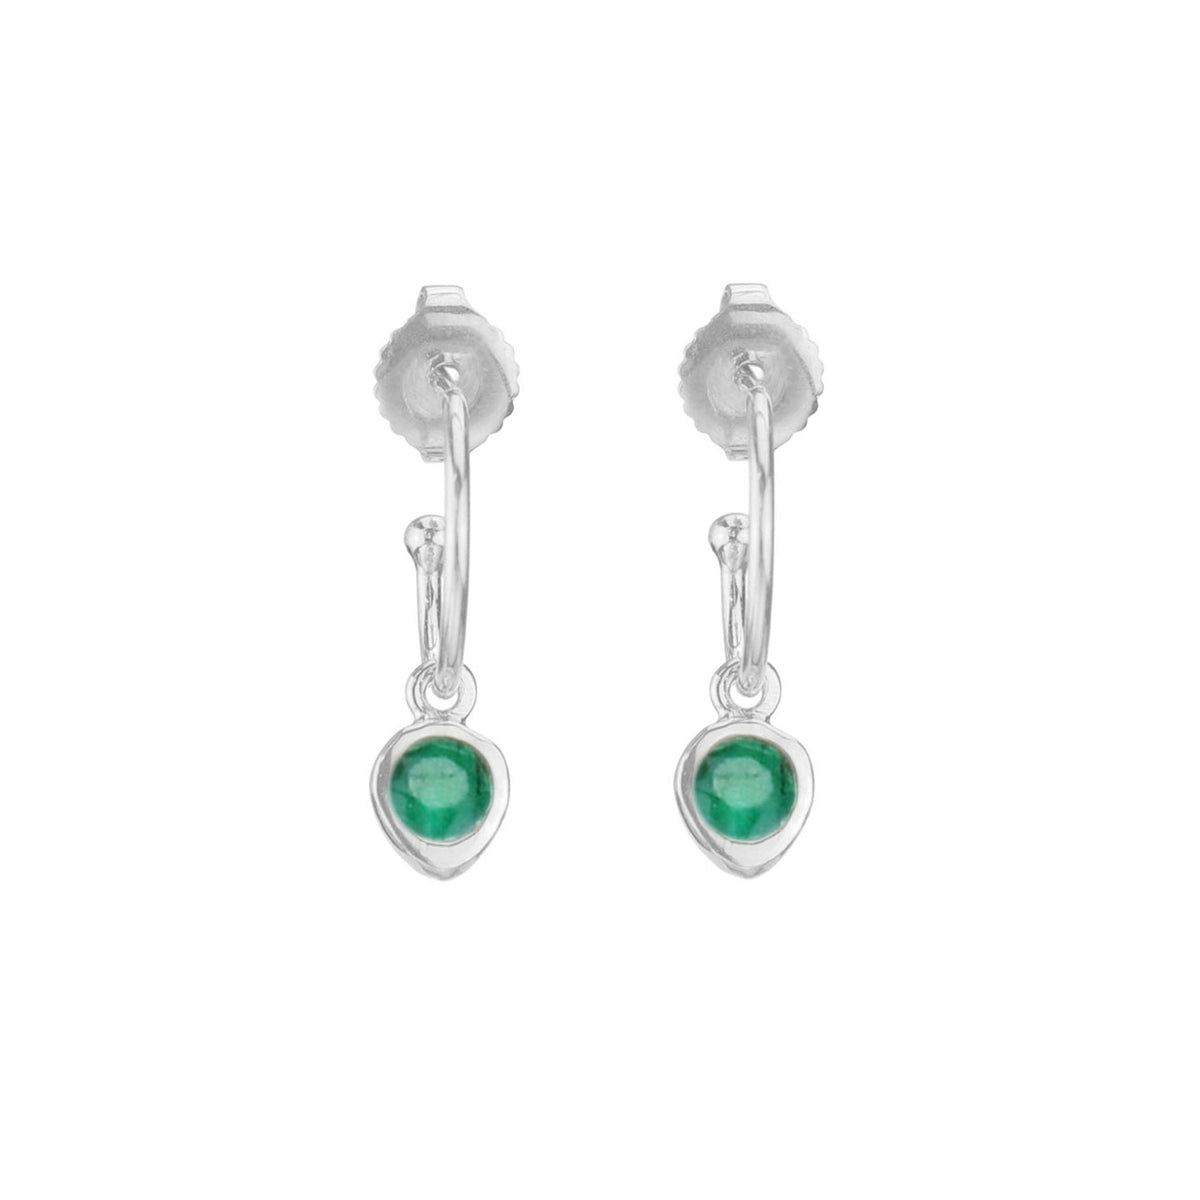 Small Hoop Earrings with Gemstones